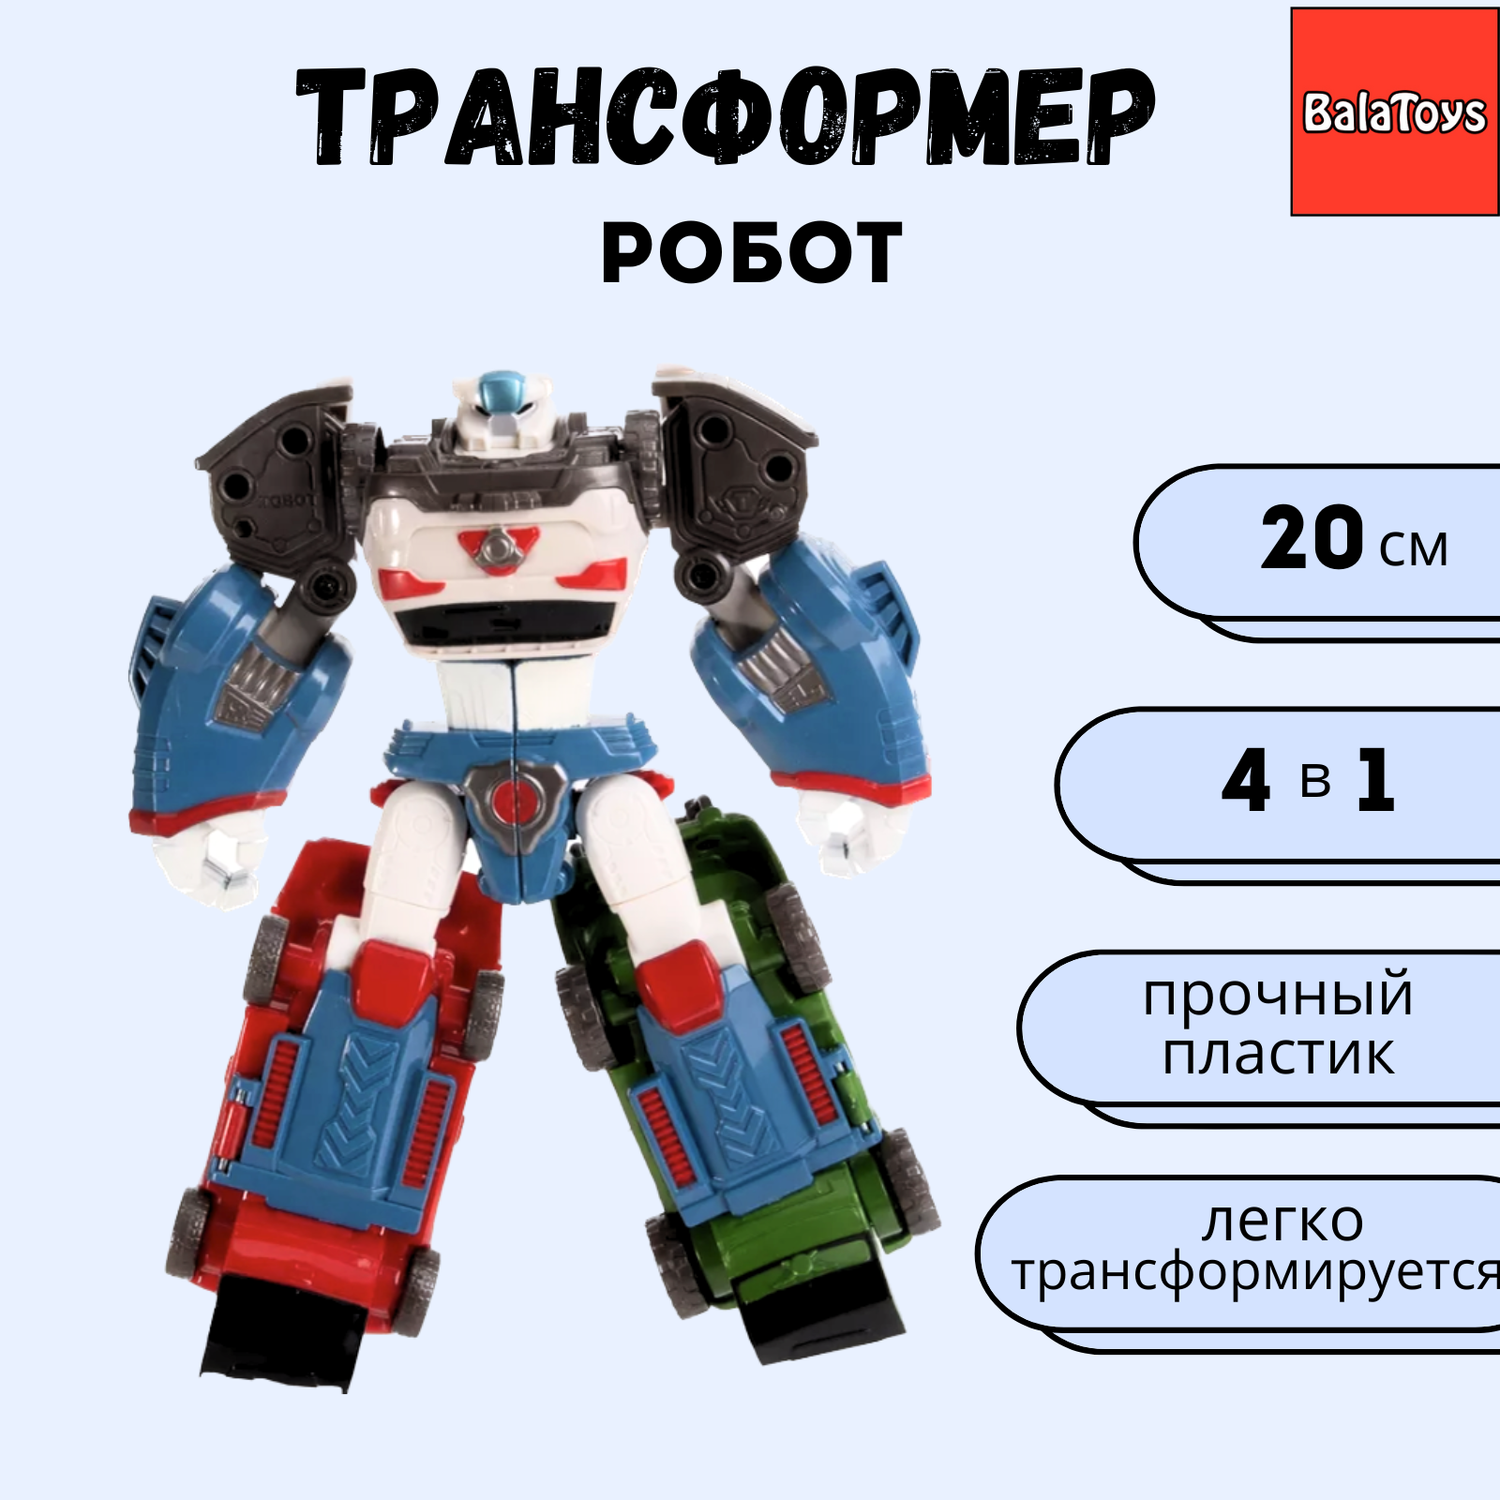 Робот Трансформер 4 в 1 BalaToys Дельтатрон 20 см - фото 1